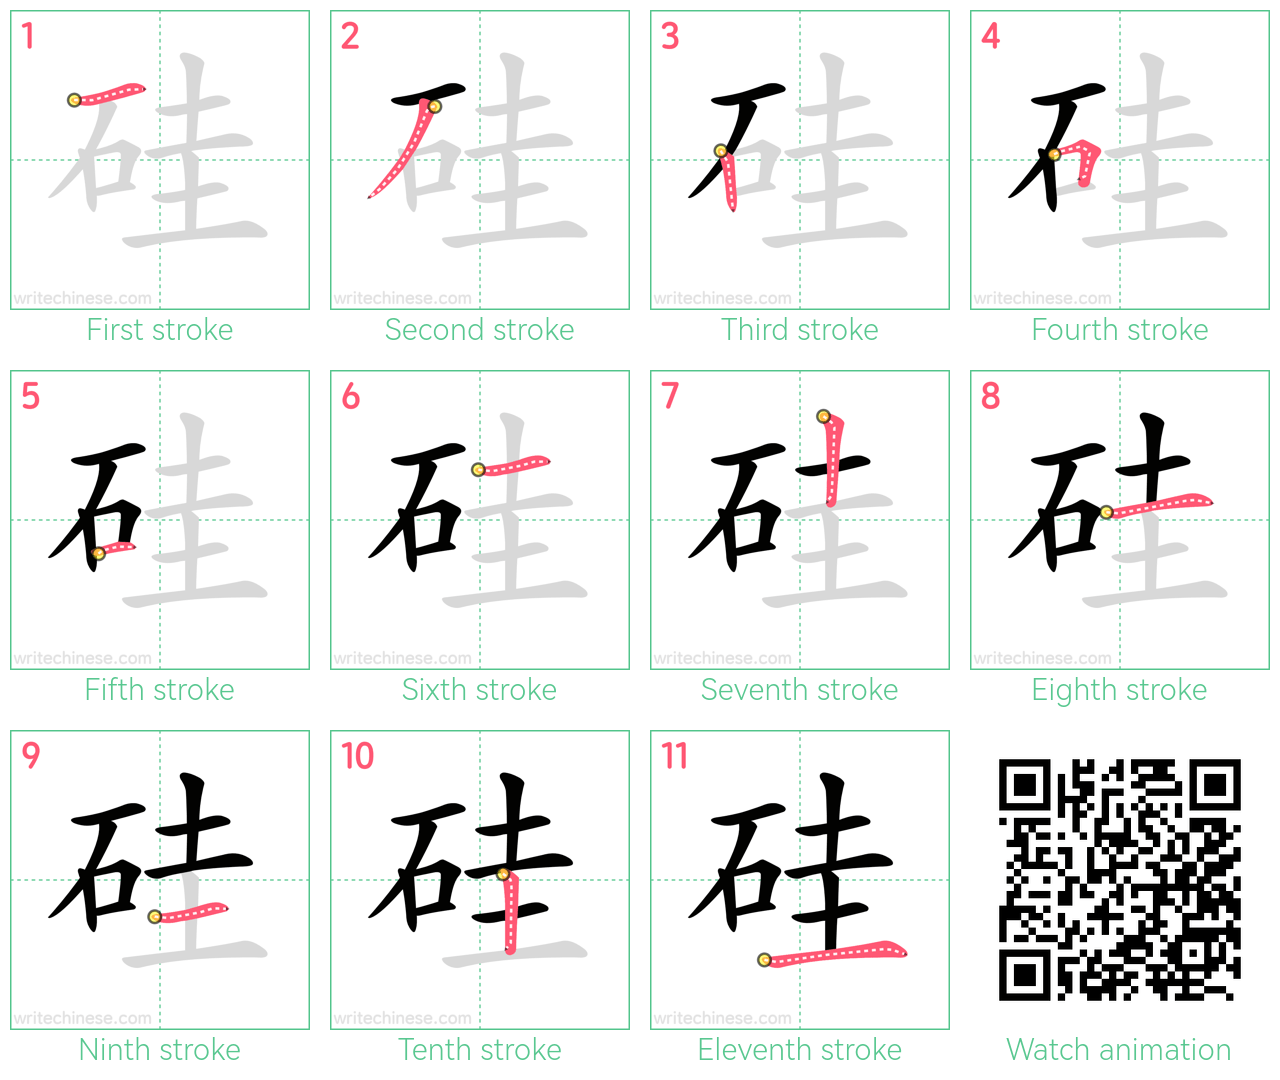 硅 step-by-step stroke order diagrams